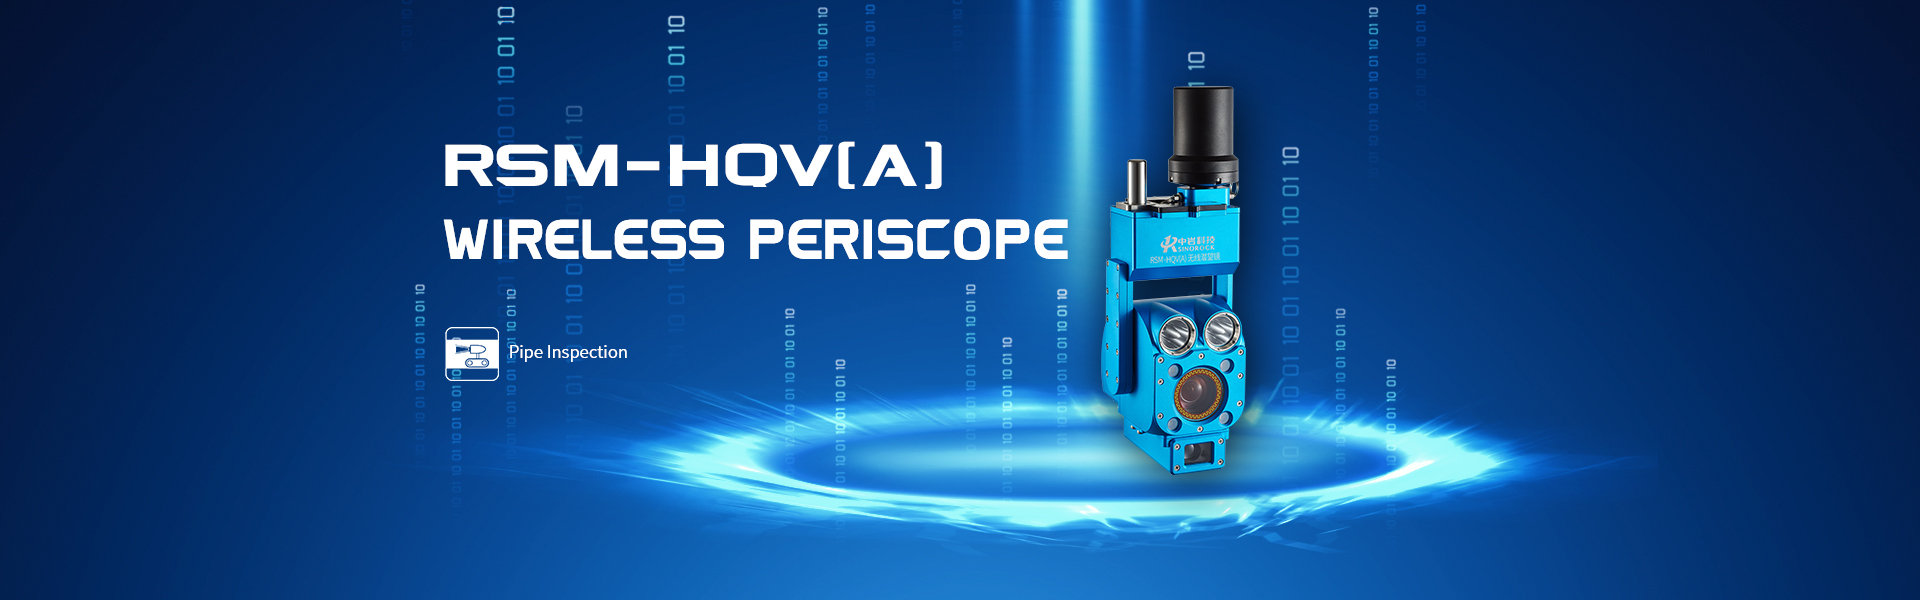 RSM-HQV(A) Wireless Periscope